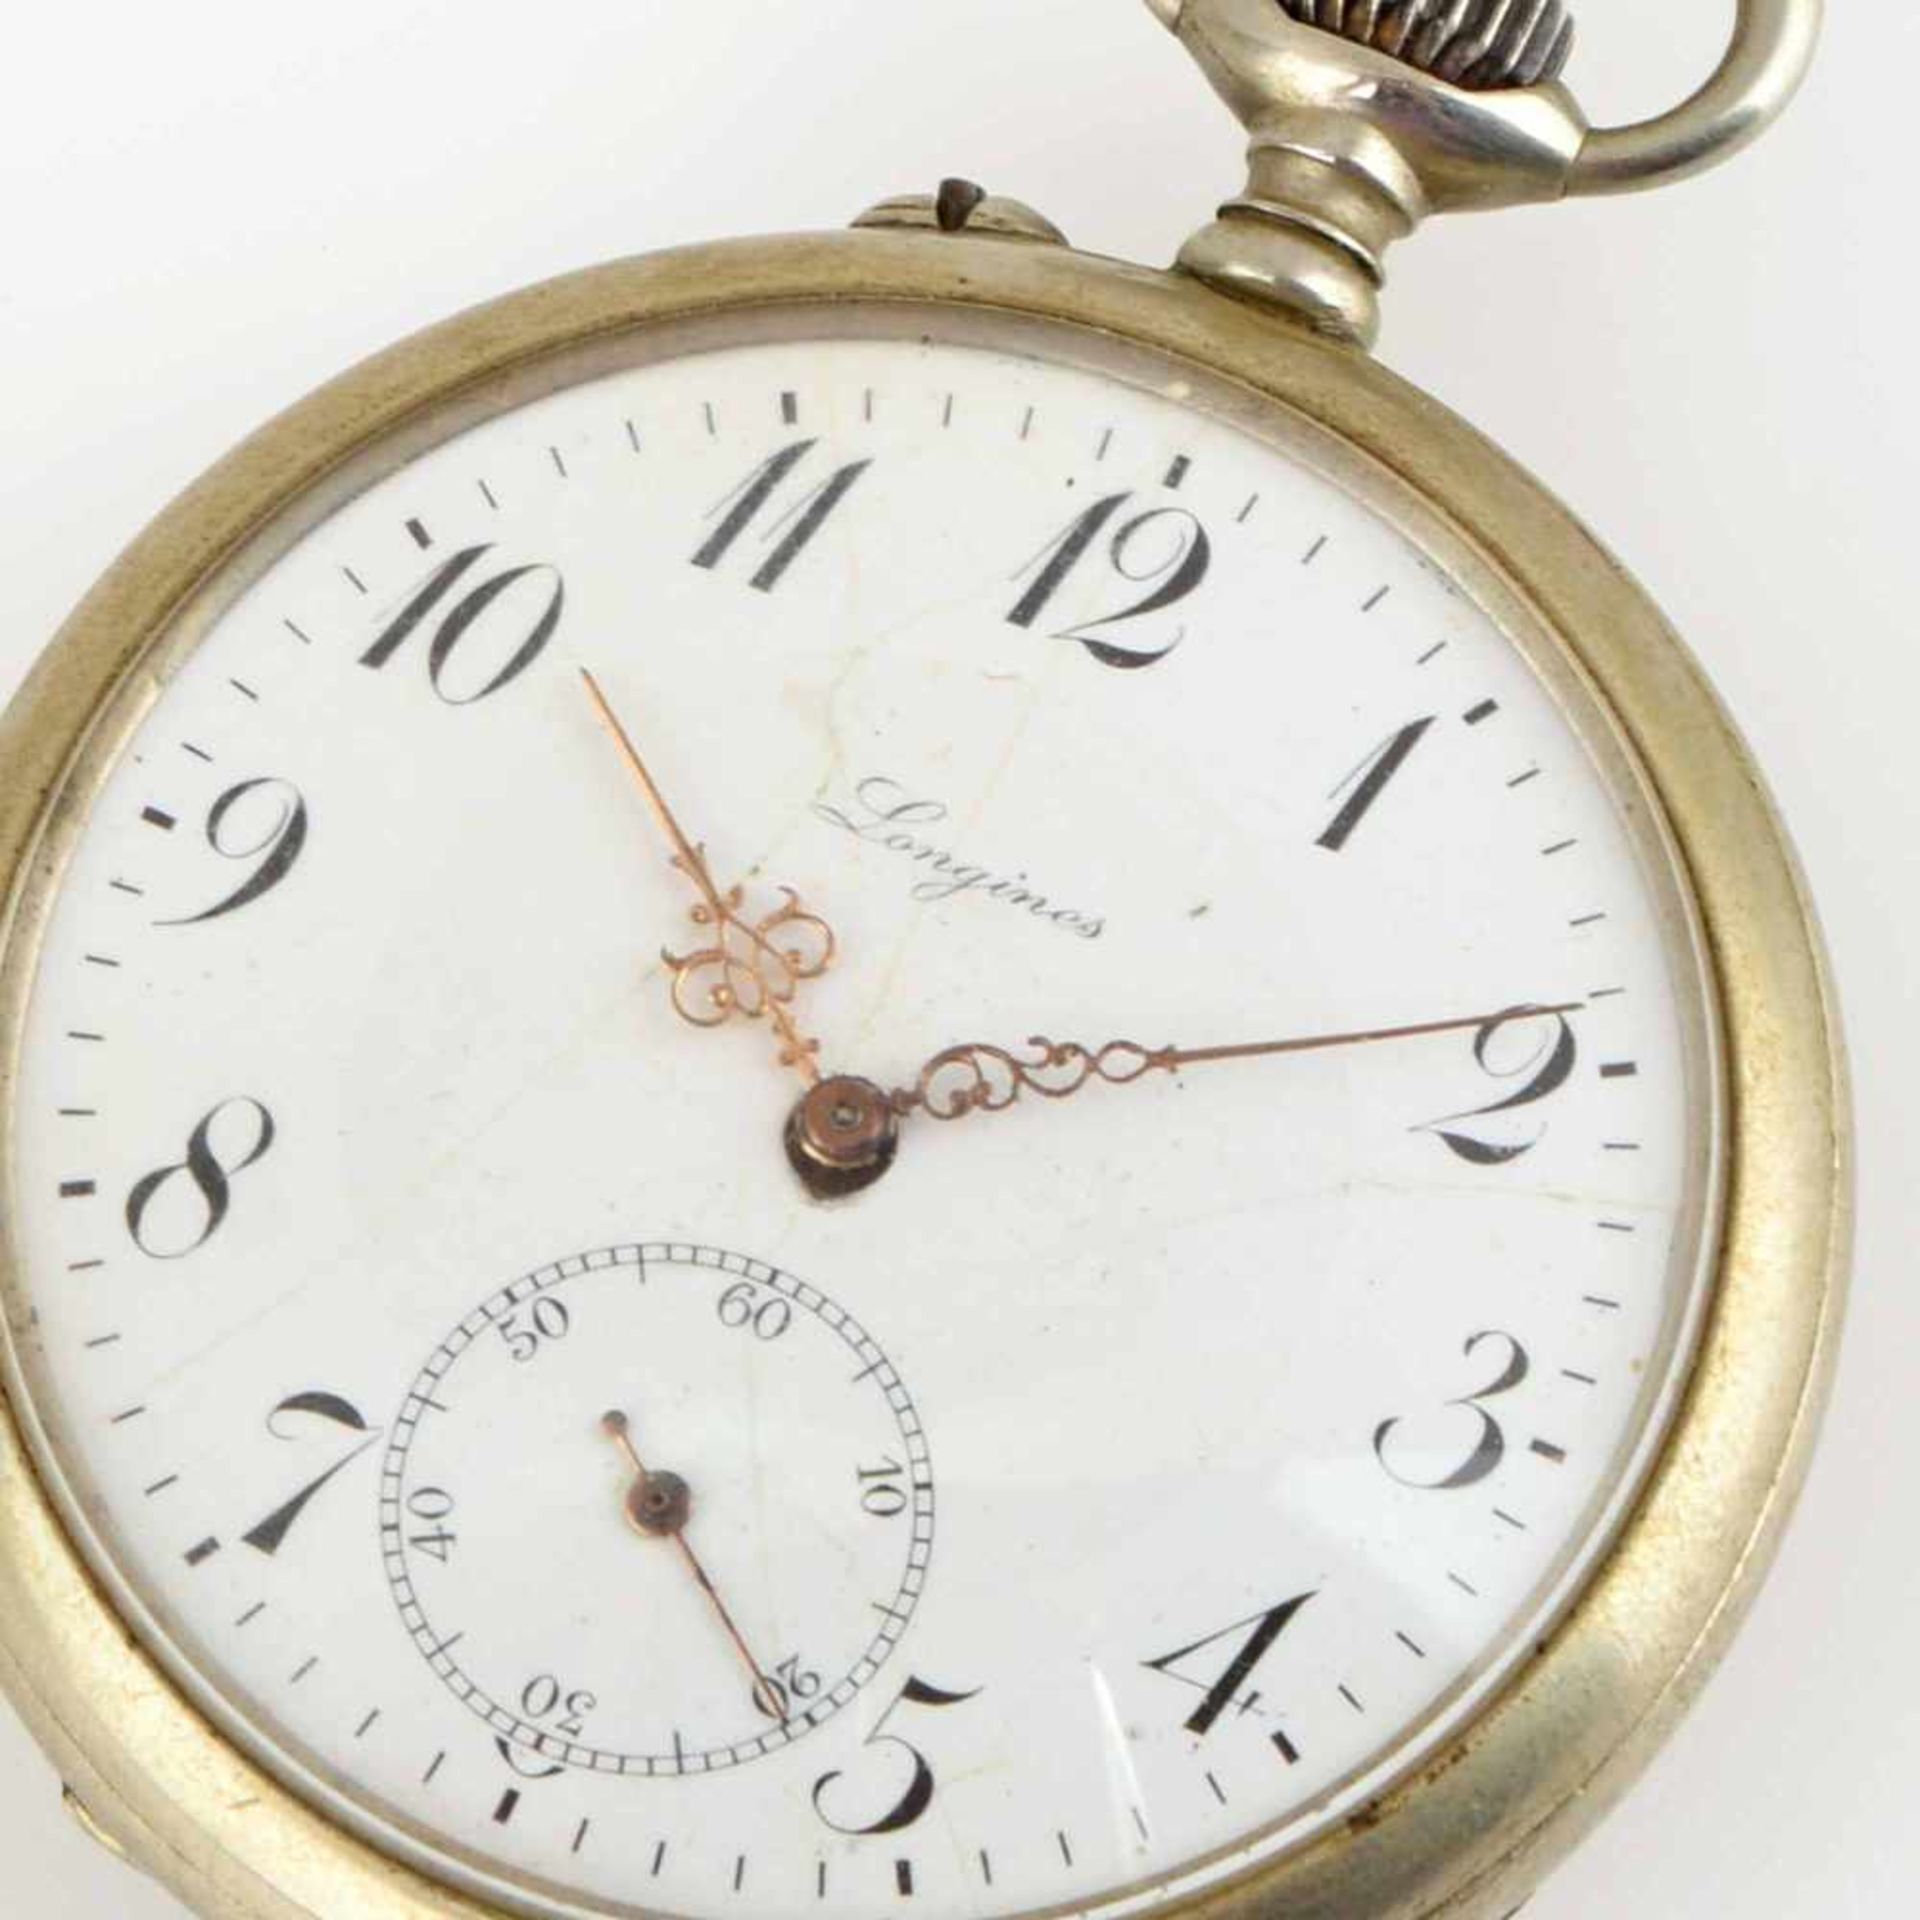 Herrentaschenuhr Metallgehäuse, mit nummeriertem Longines-Uhrwerk (2905285), Emailzifferblatt (